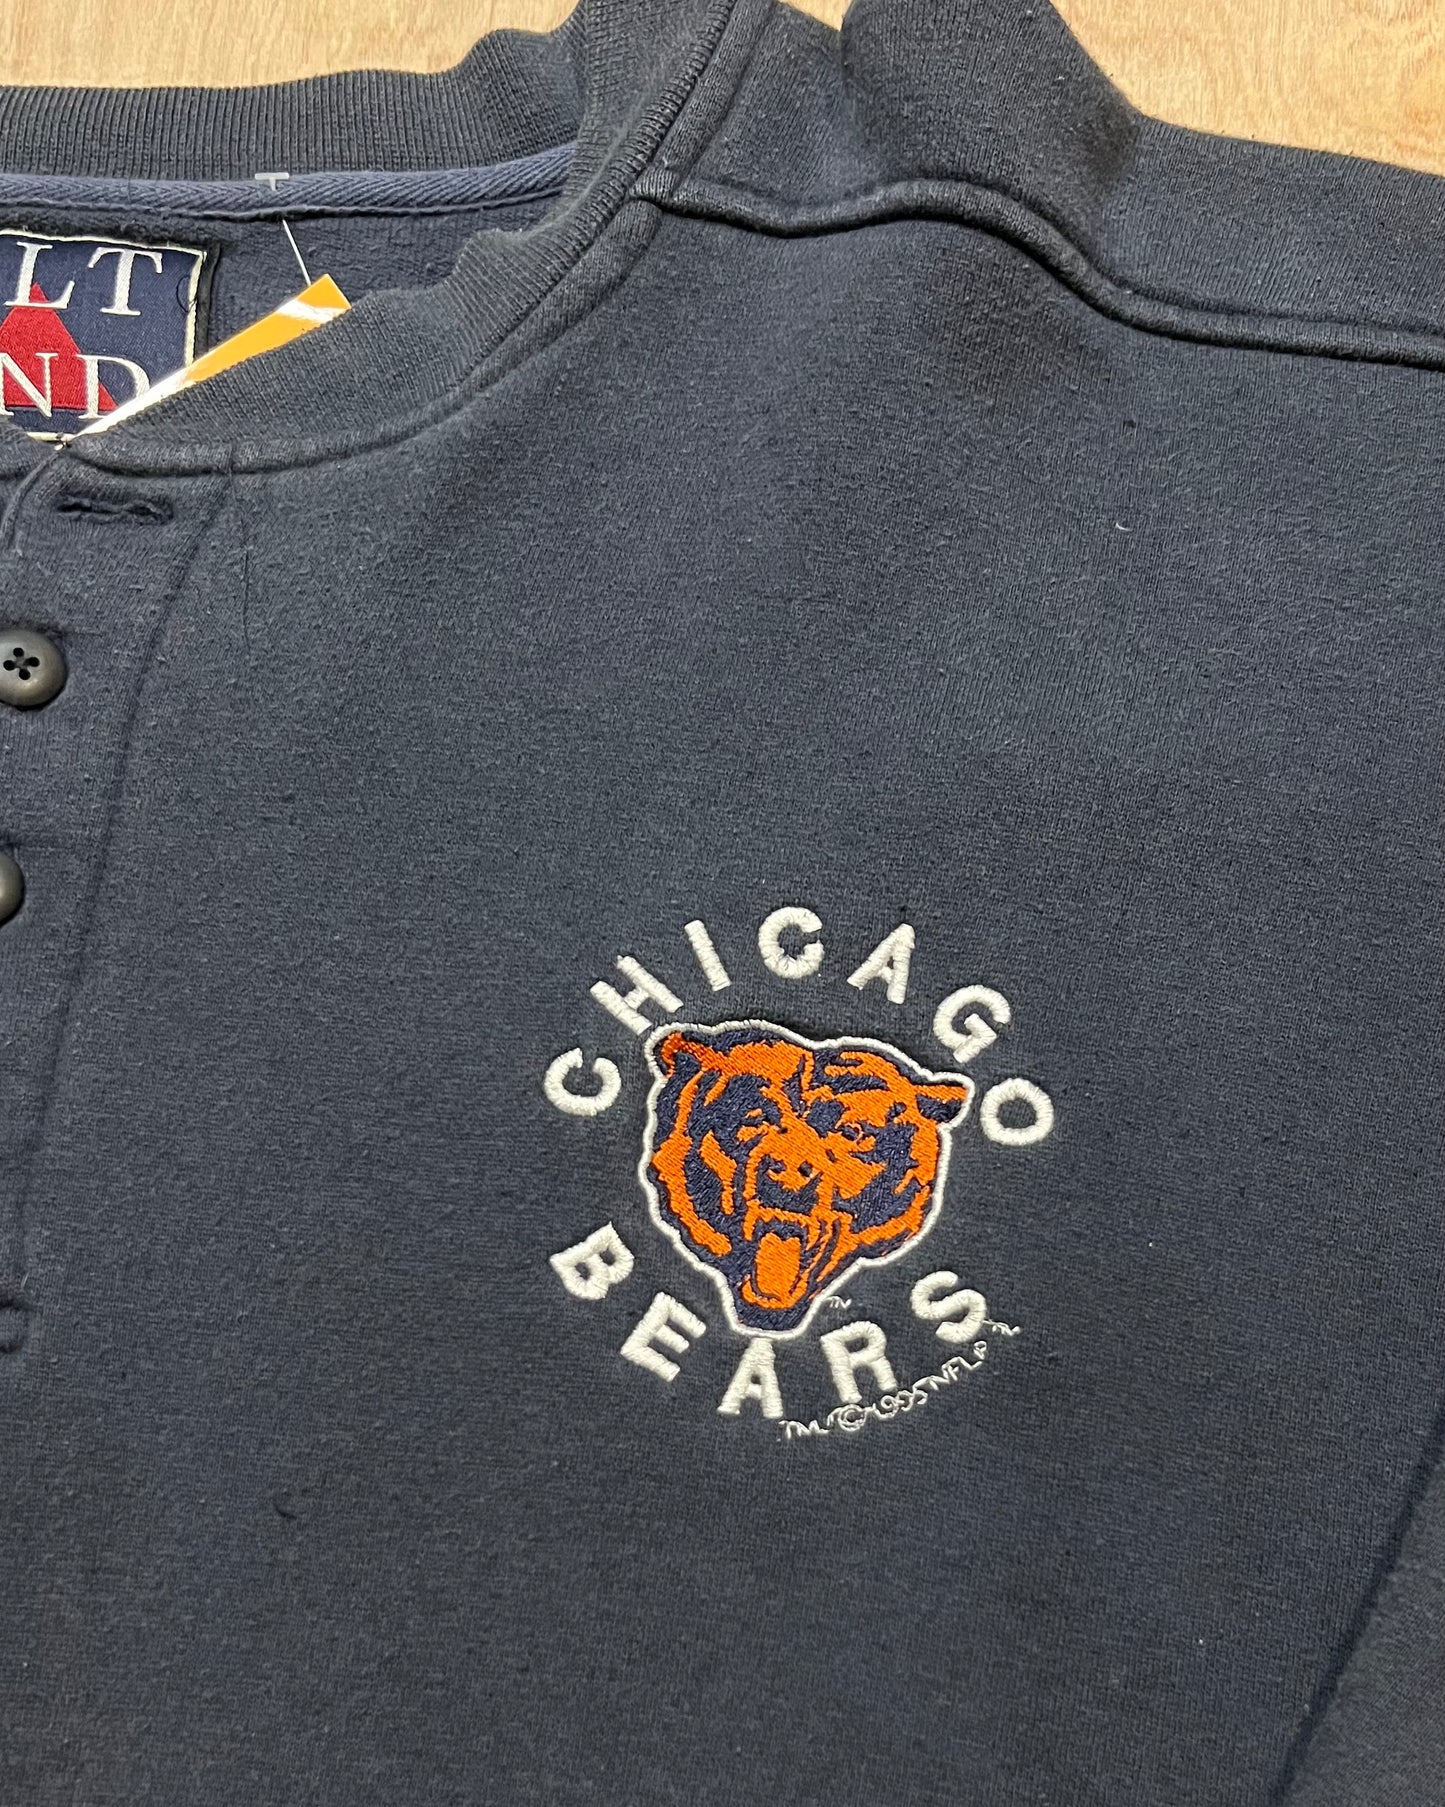 1995 Chicago Bears 3 Button Crewneck